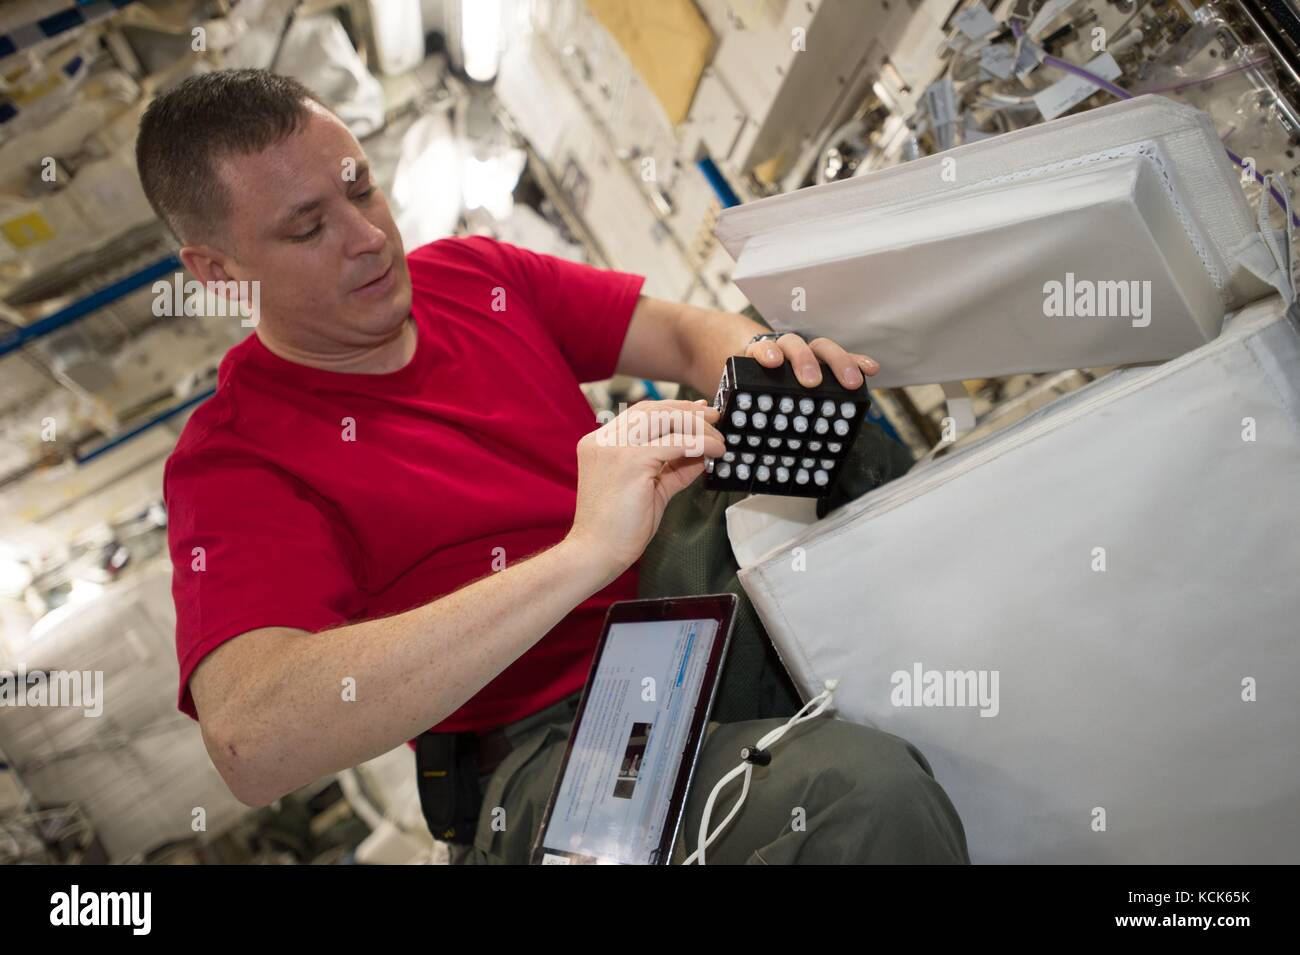 Die NASA ISS Expedition 51 prime Besatzungsmitglied amerikanische Astronaut jack Fischer arbeitet an der Gestaltung der beschleunigten reaktivierenmaschine Experiment in die japanische Experimentmodul Juni 6, 2017 in der Erdumlaufbahn. (Foto: Nasa Foto über planetpix) Stockfoto